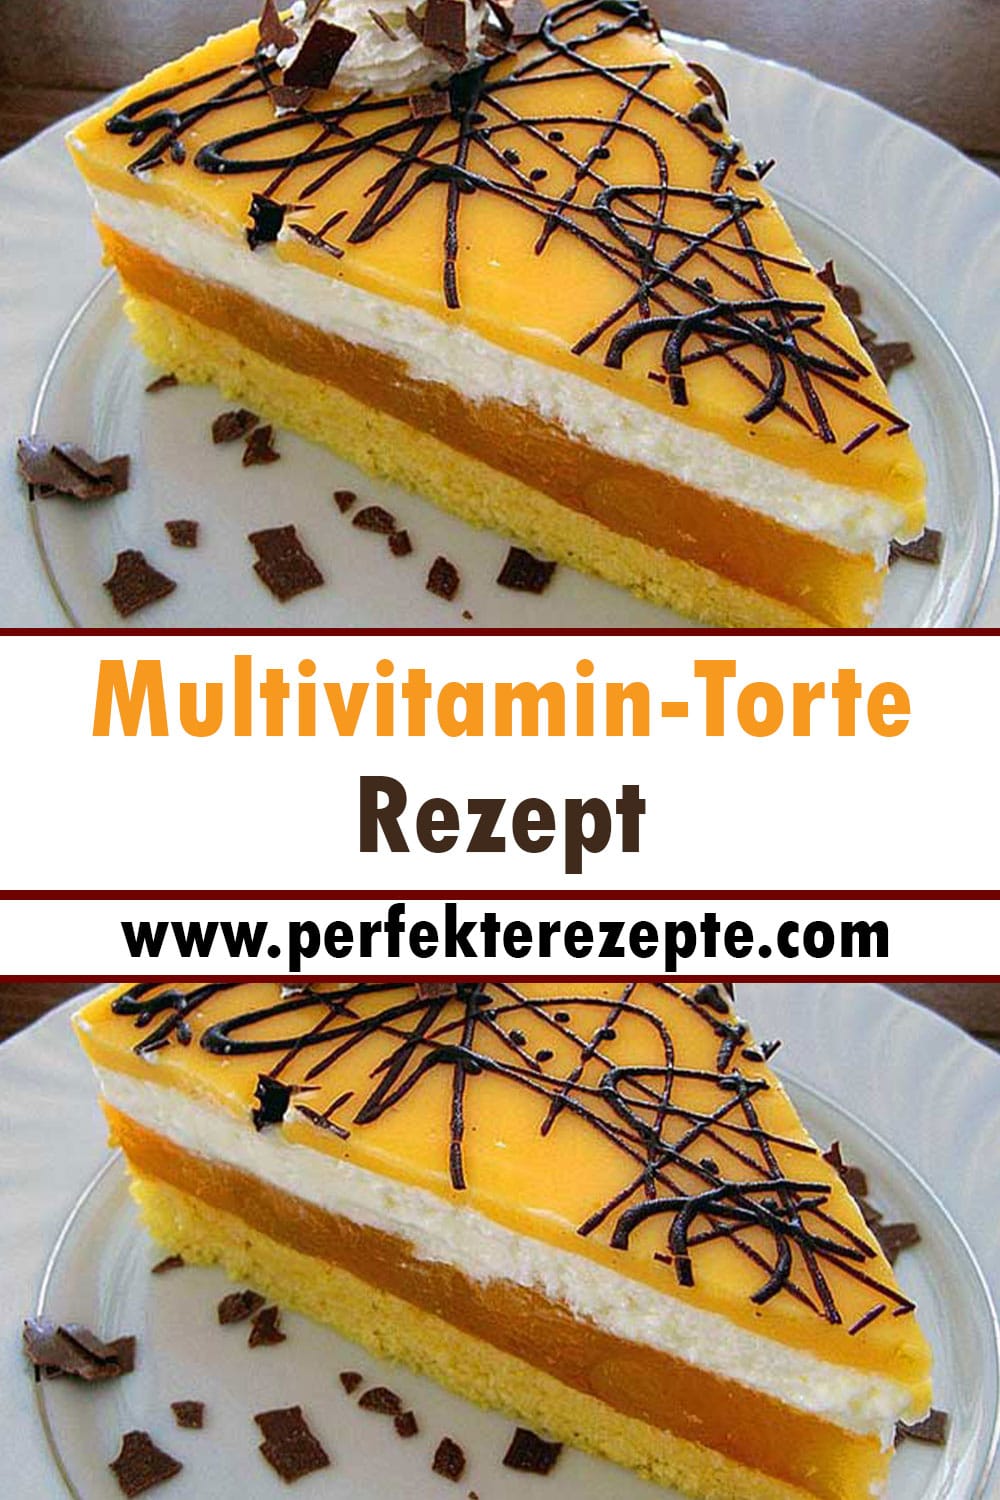 Multivitamin-Torte Rezept: leicht schmeckende Torte